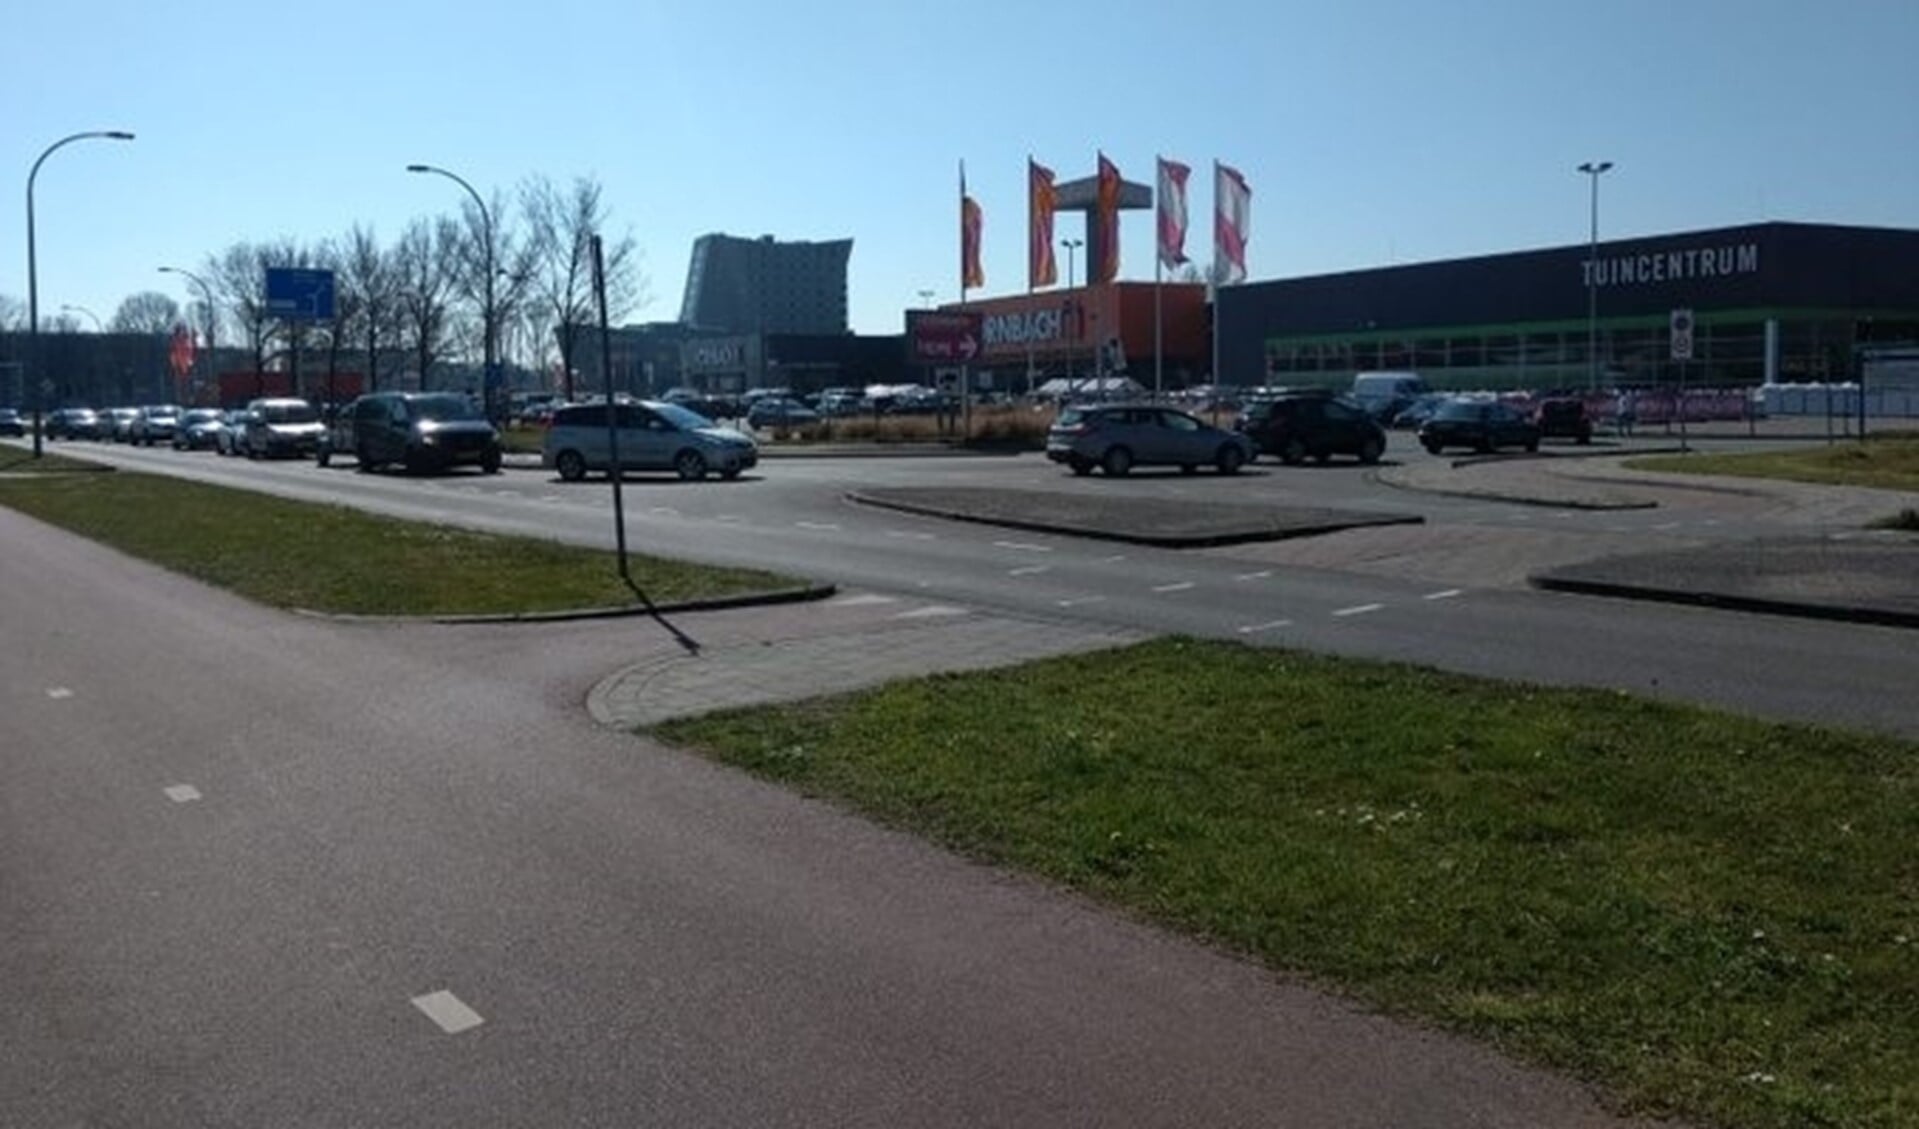 Op zondag stond er rond 12:15 uur al een file bij de bouwmarkt in Ypenburg. Foto: via twitter Wijkagenten Ypenburg